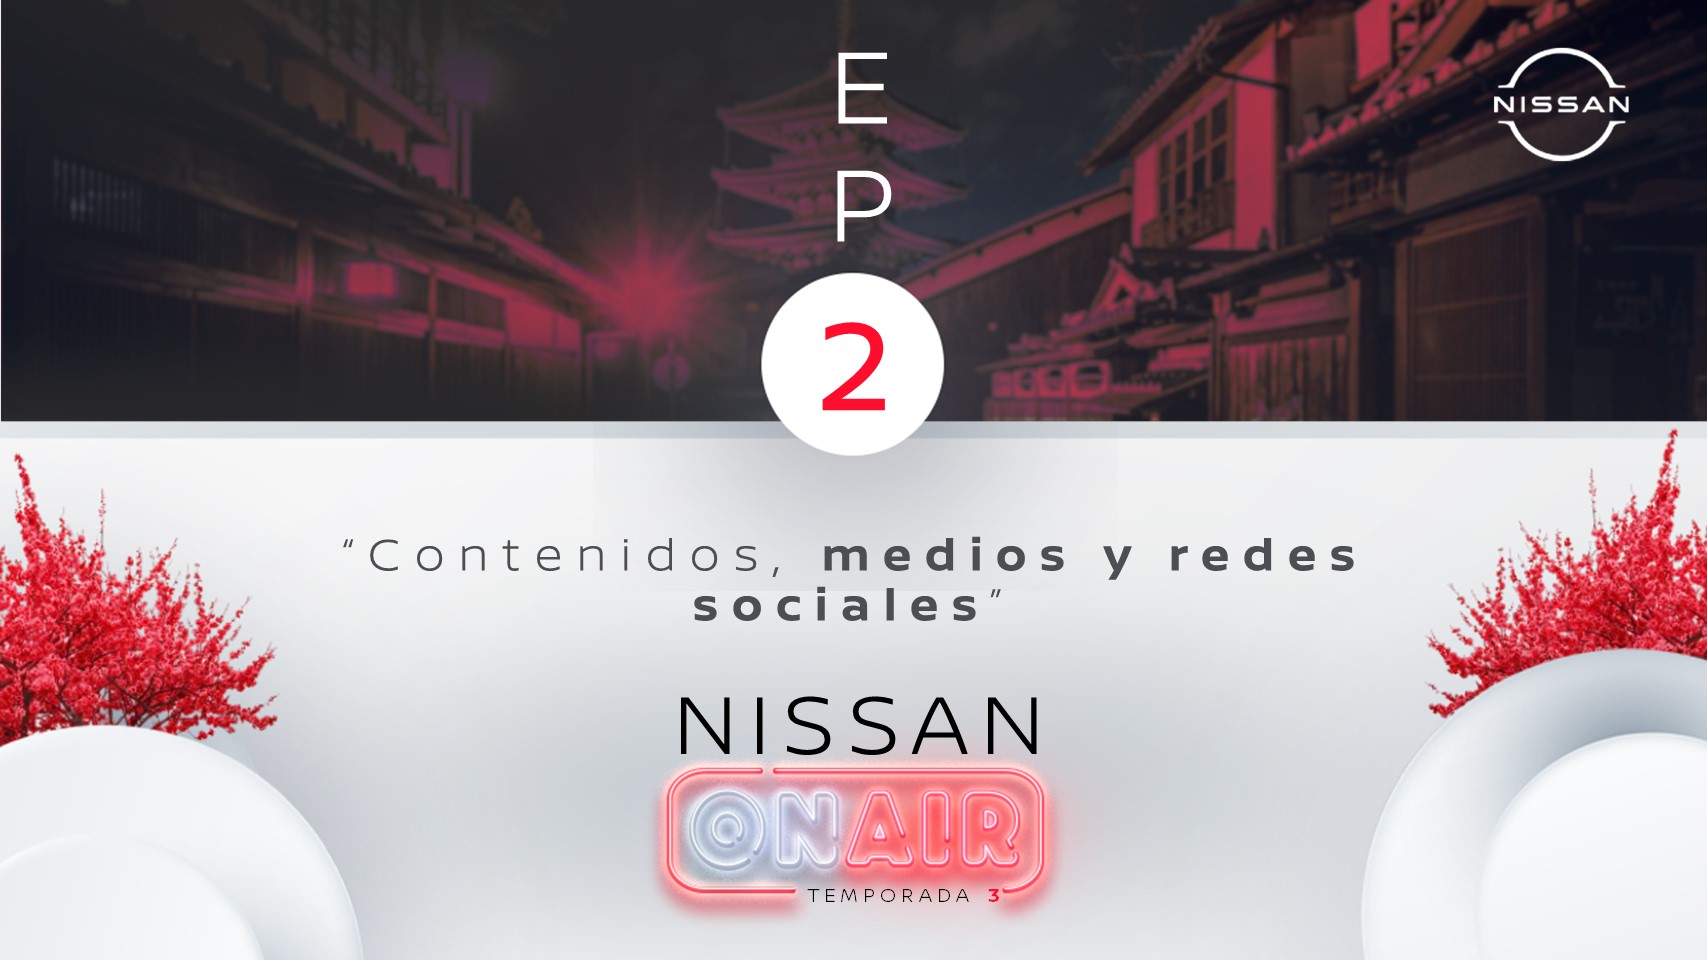 Foto de Nissan ON AIR Temporada 3 EP2: Contenidos, medios y redes sociales